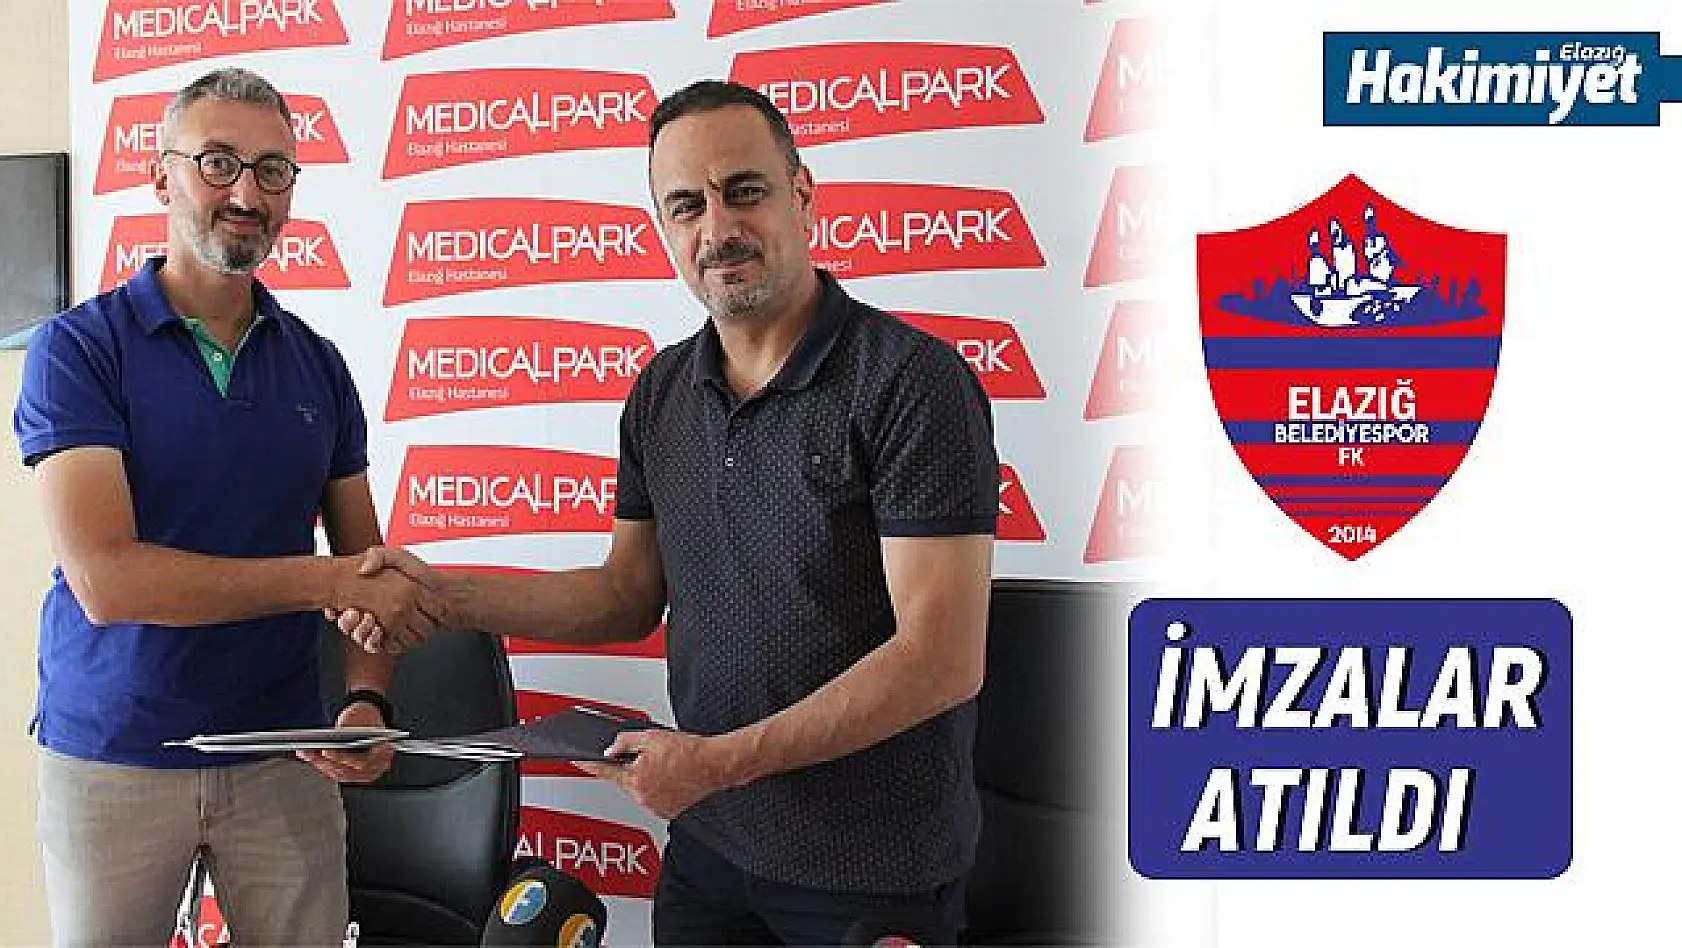  Elazığ Belediyespor'a sağlık sponsoru